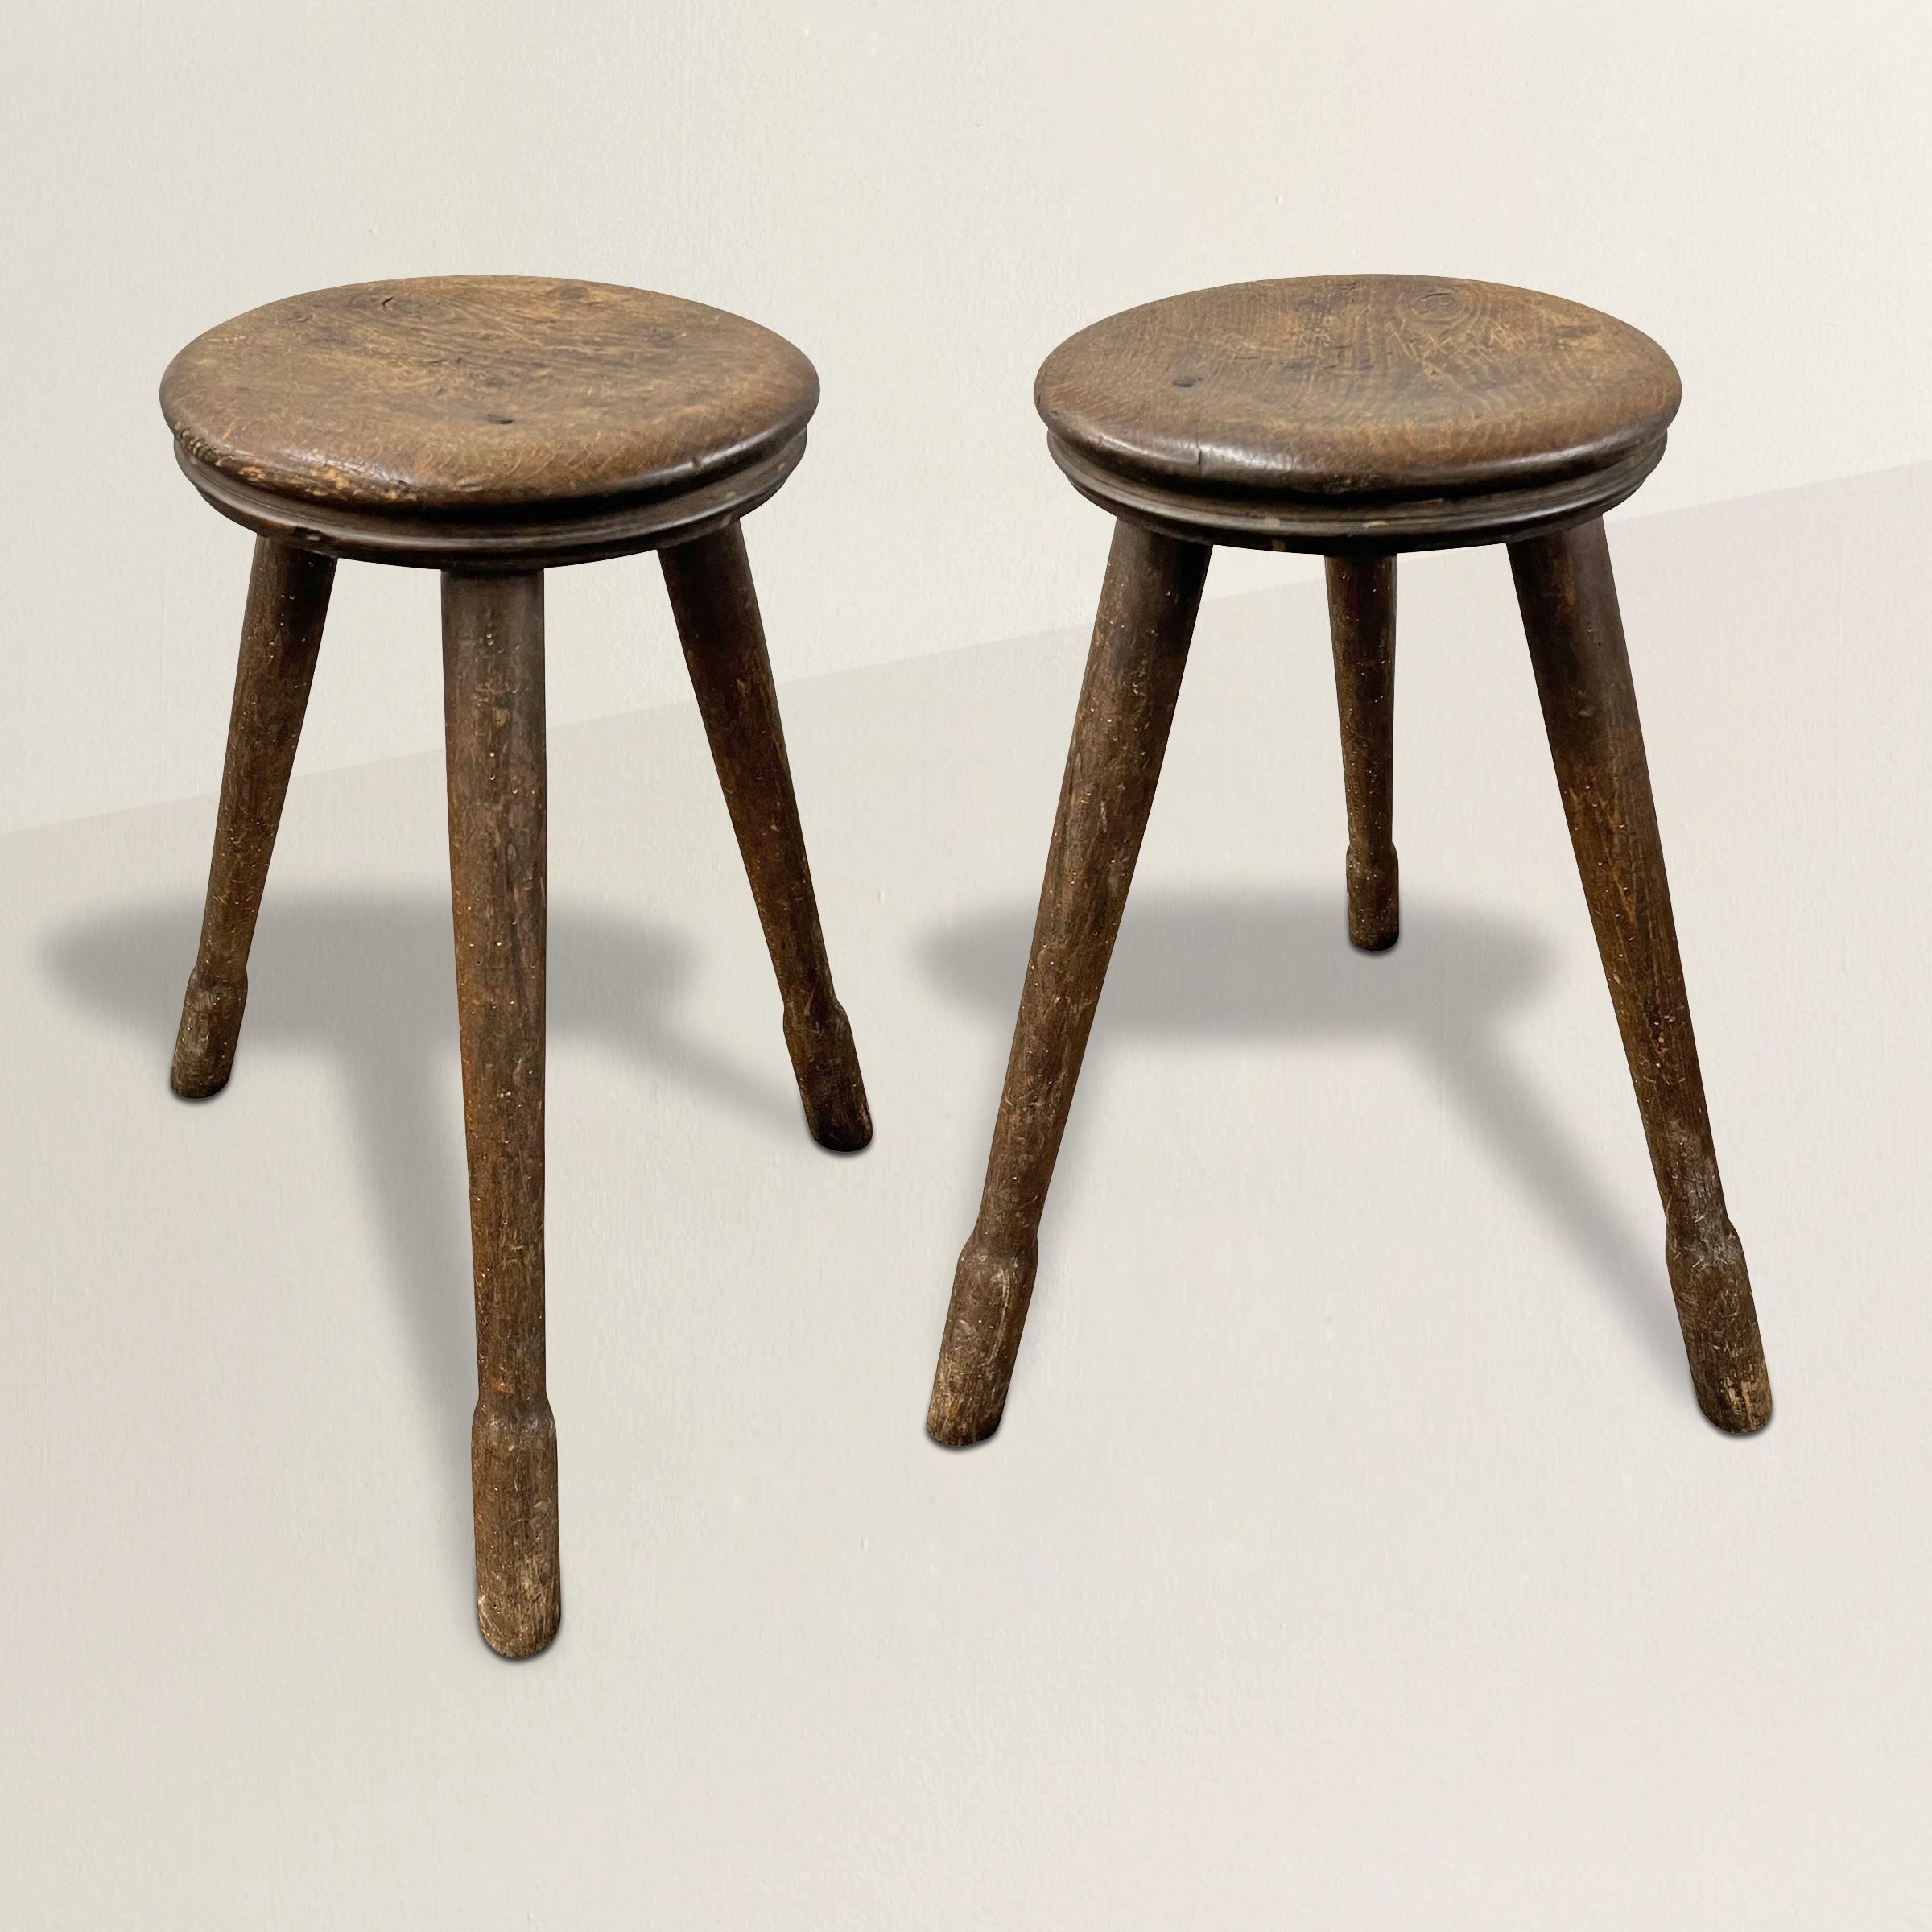 Ein Paar französische Hocker aus dem späten 19. Jahrhundert, wahrscheinlich aus einer Werkstatt oder Fabrik, mit wunderschön abgenutzten Sitzen und jeweils drei gespreizten, gedrechselten Beinen mit Füßen. Perfekte Höhe für Thekenhocker, aber auch